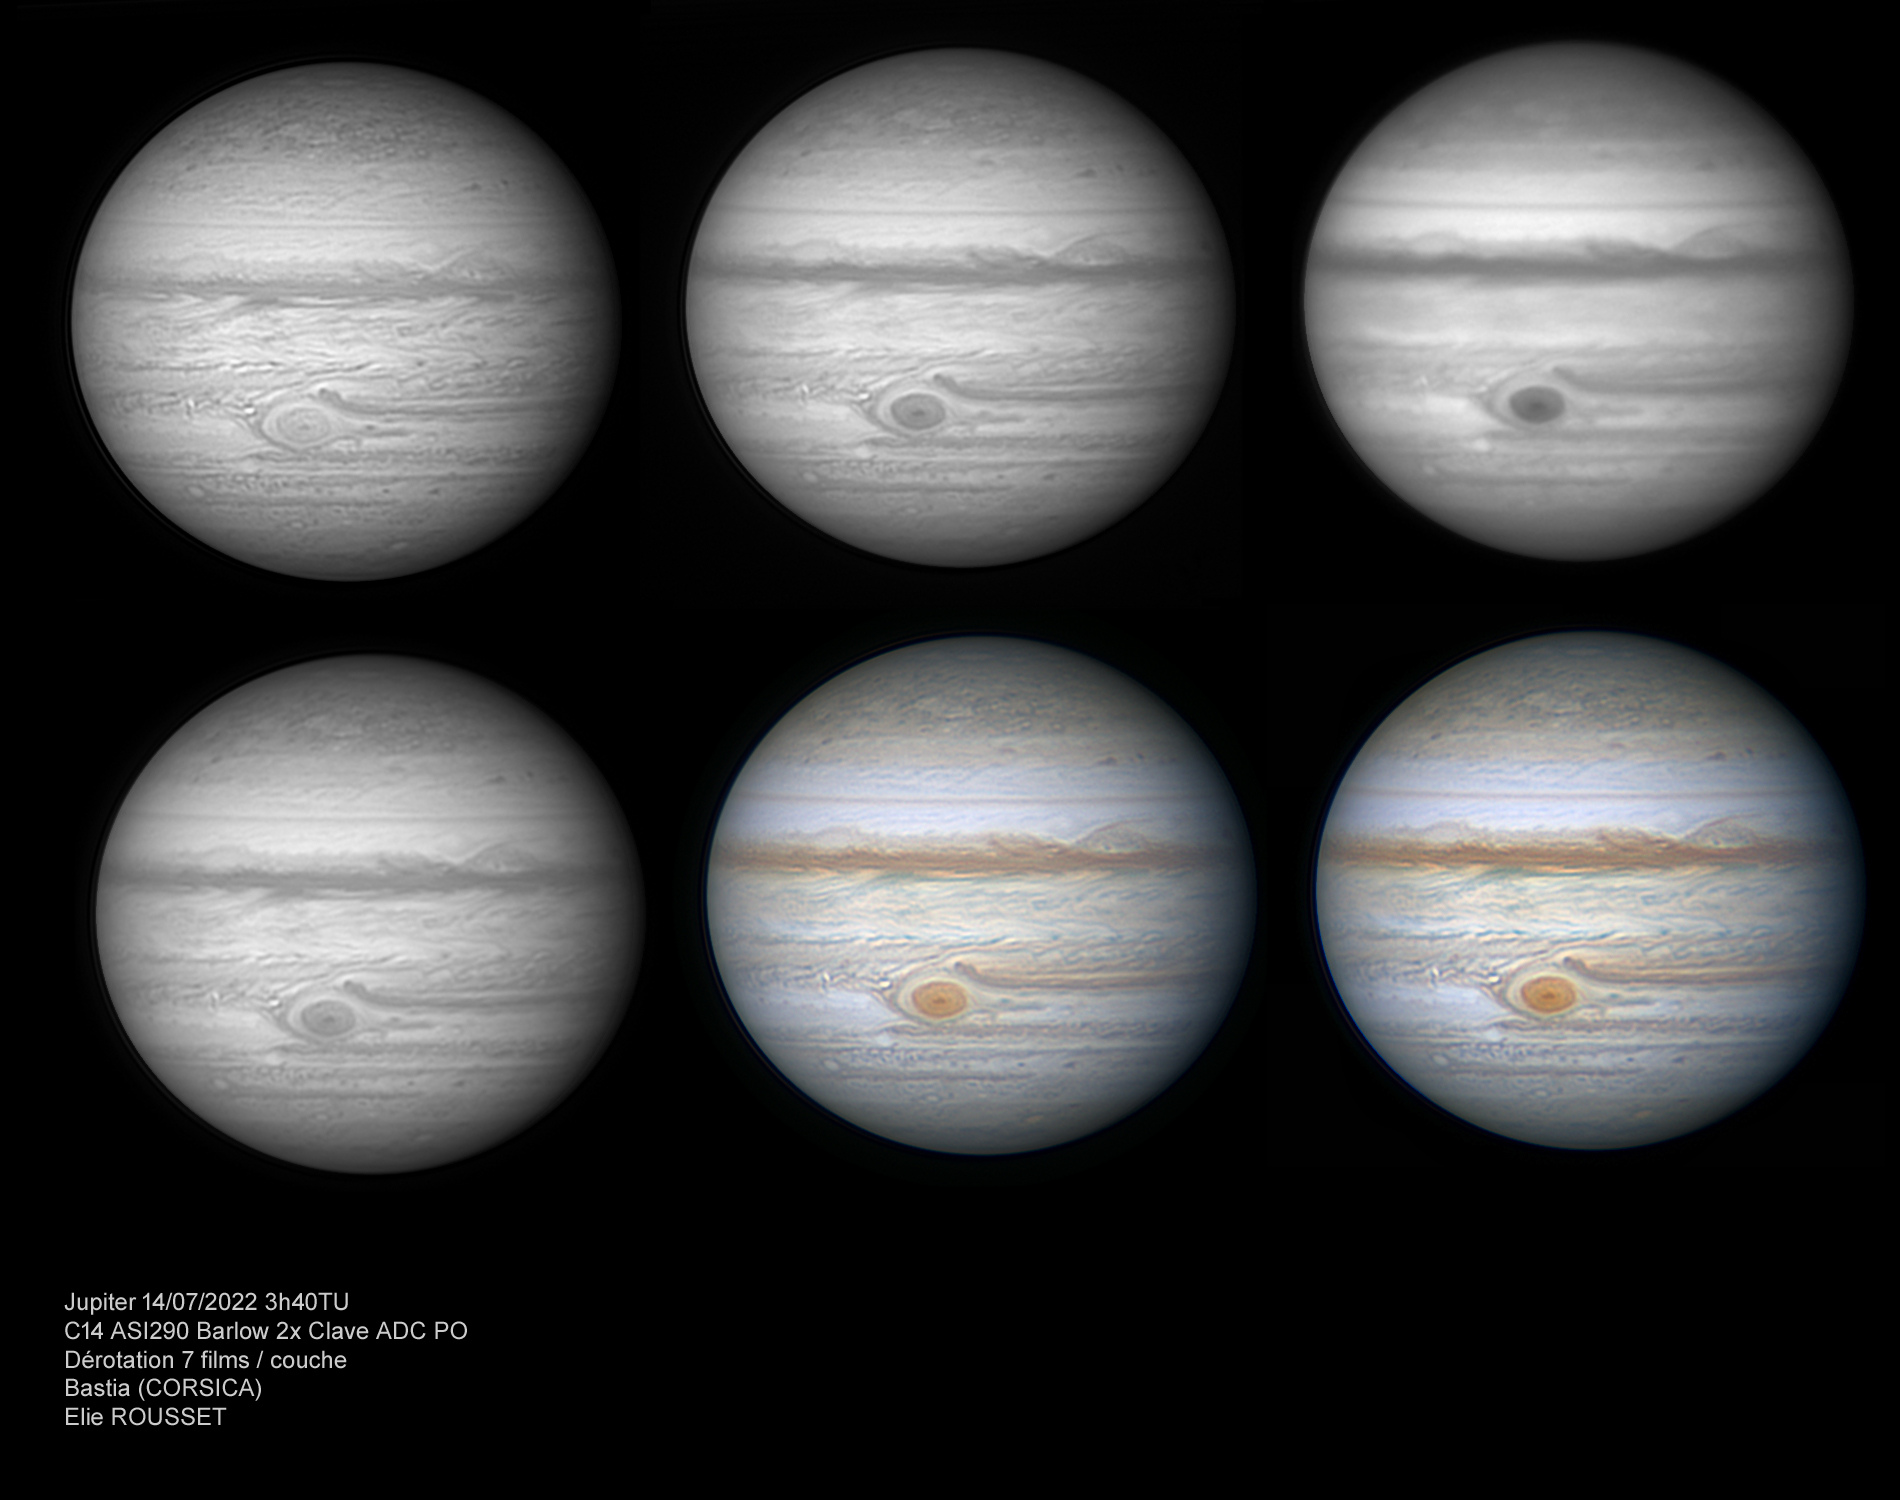 Jupiter-14-07-2022-3h40-pla.jpg